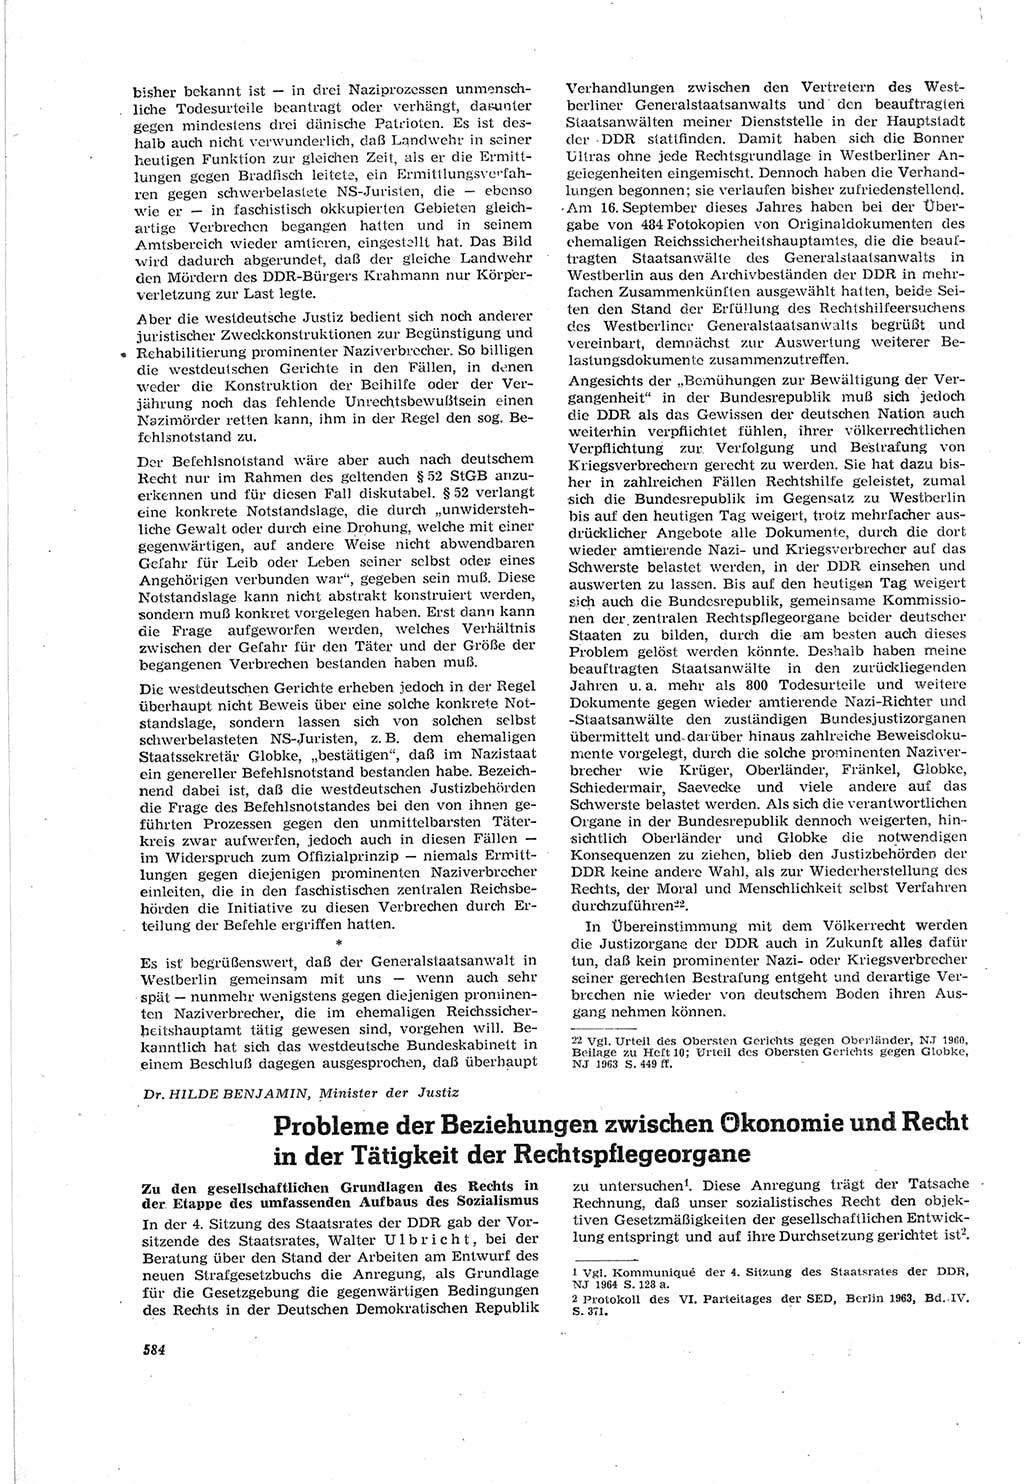 Neue Justiz (NJ), Zeitschrift für Recht und Rechtswissenschaft [Deutsche Demokratische Republik (DDR)], 18. Jahrgang 1964, Seite 584 (NJ DDR 1964, S. 584)